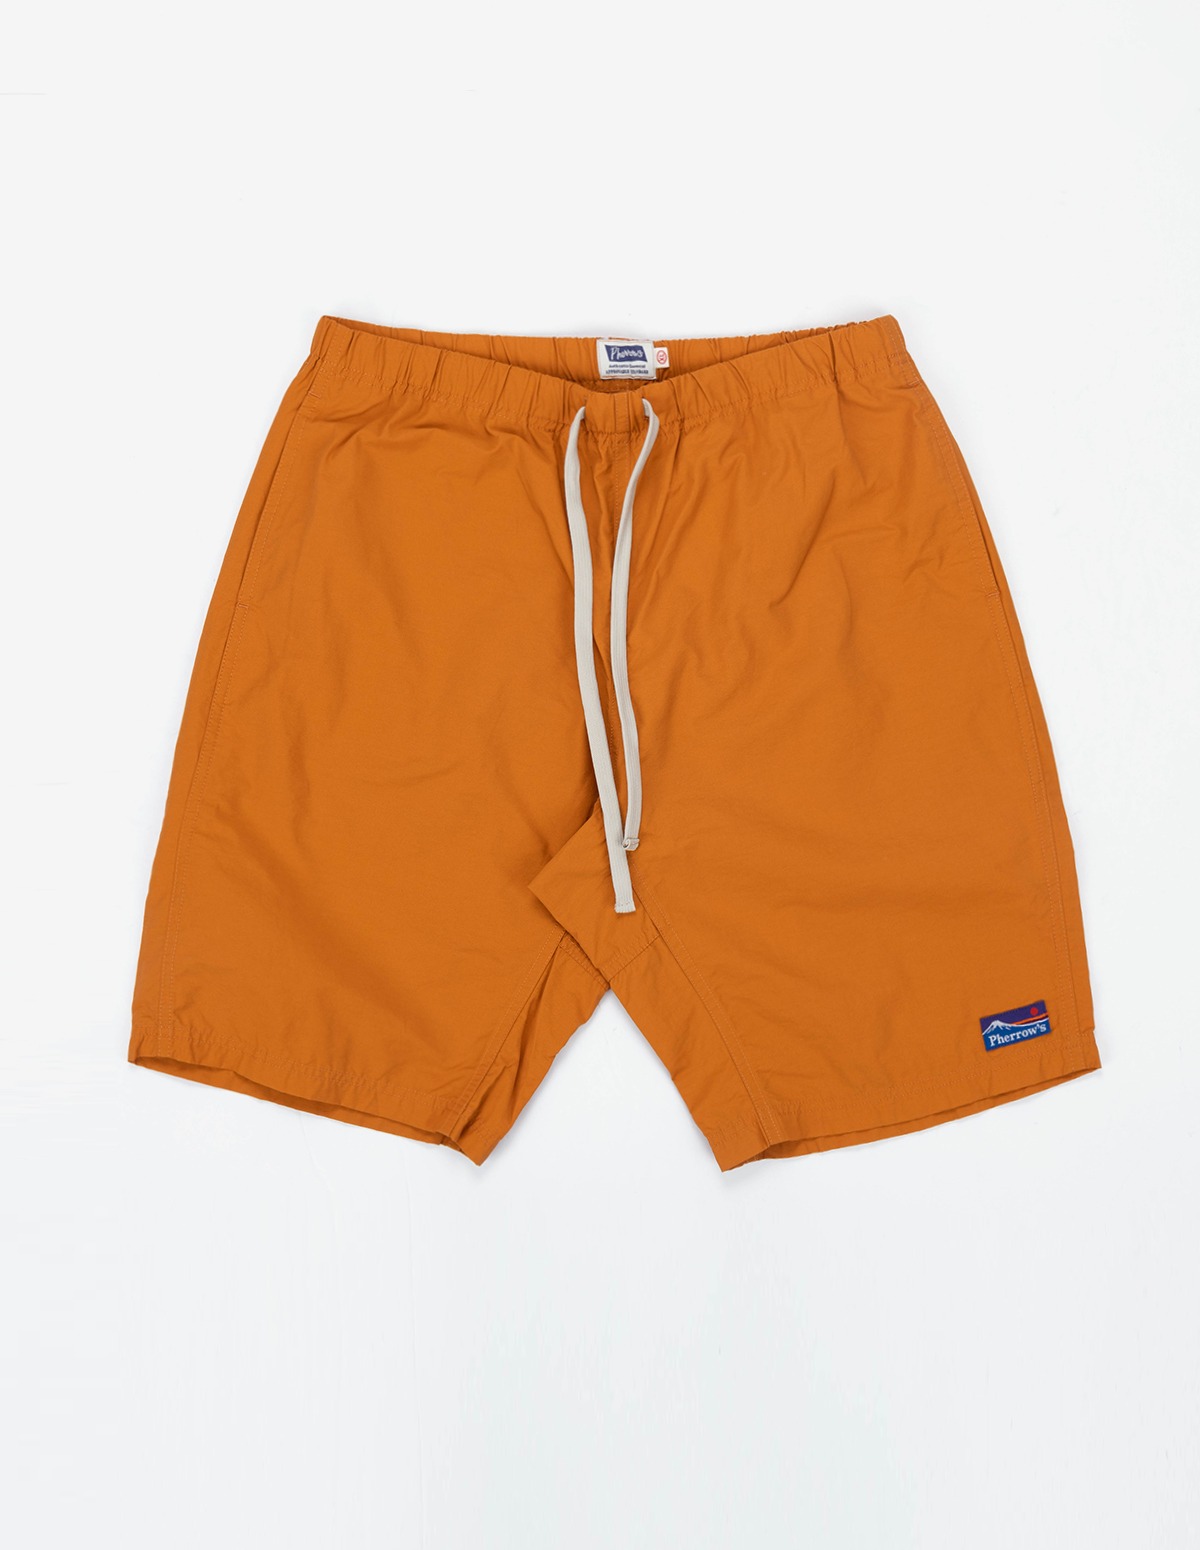 23S-PCES1 Cotton Nylon Short Pants (Orange)